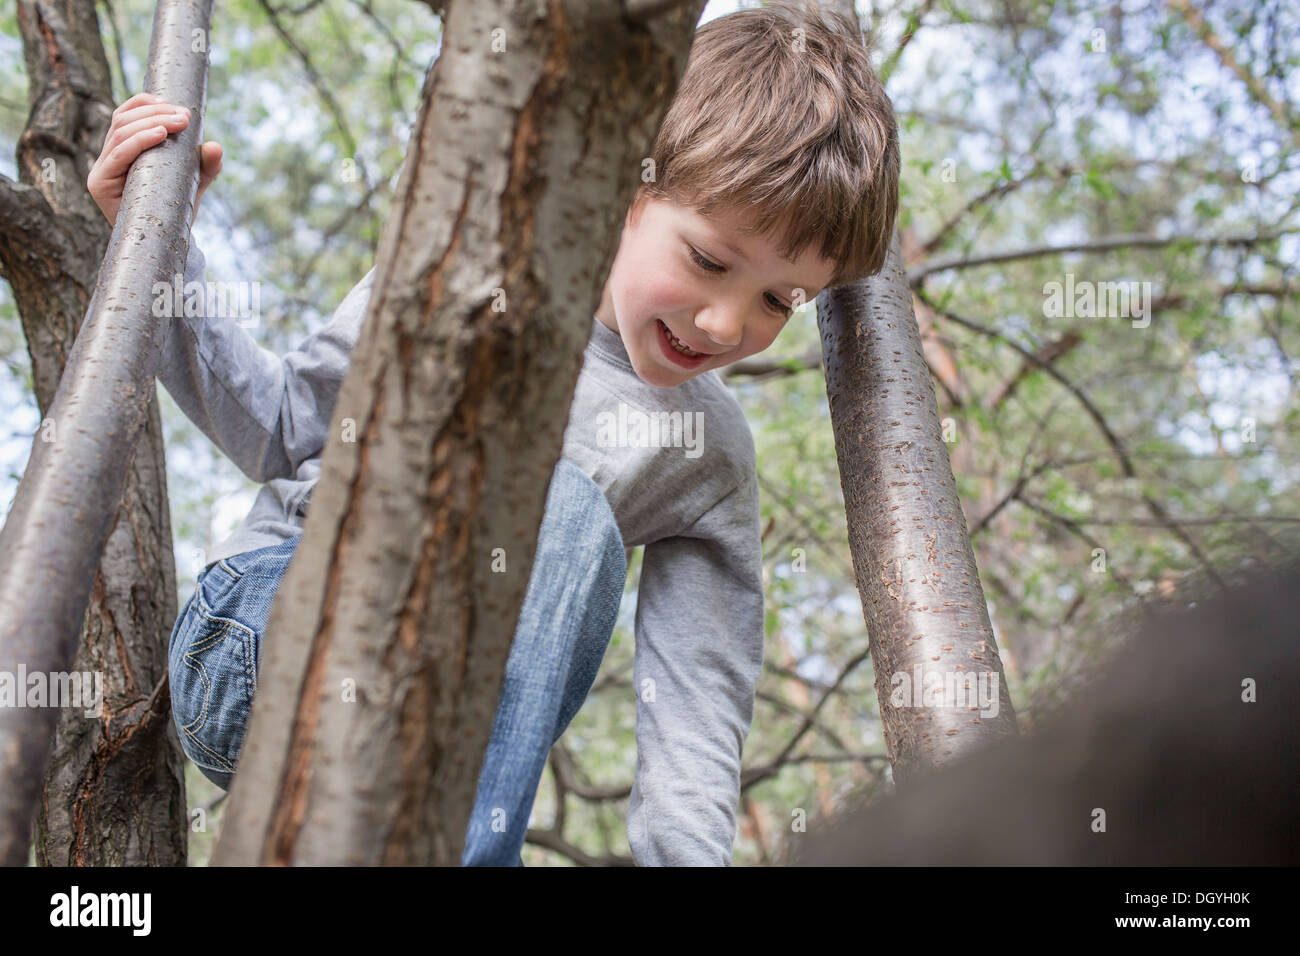 A cheerful boy climbing a boy Stock Photo